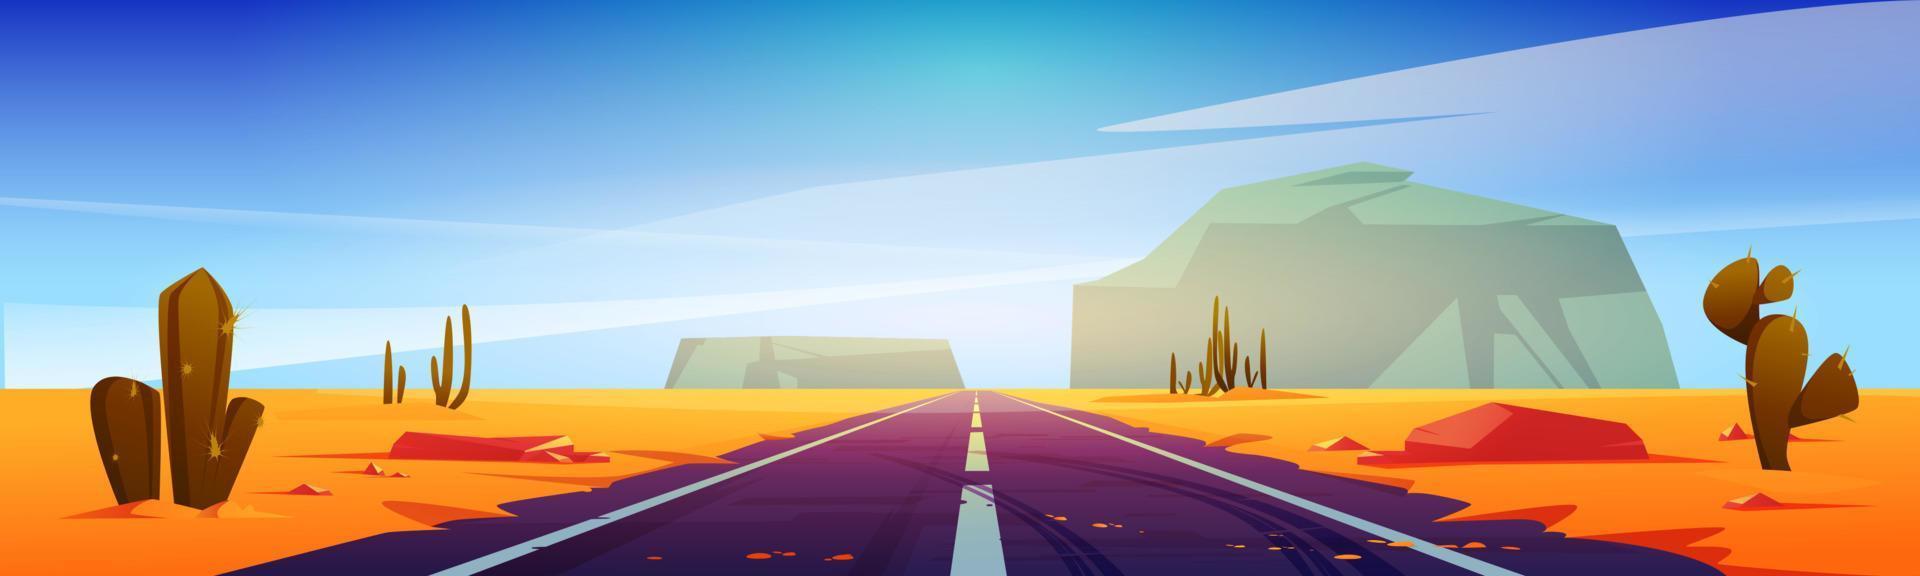 estrada na paisagem do cenário do deserto com rochas vetor